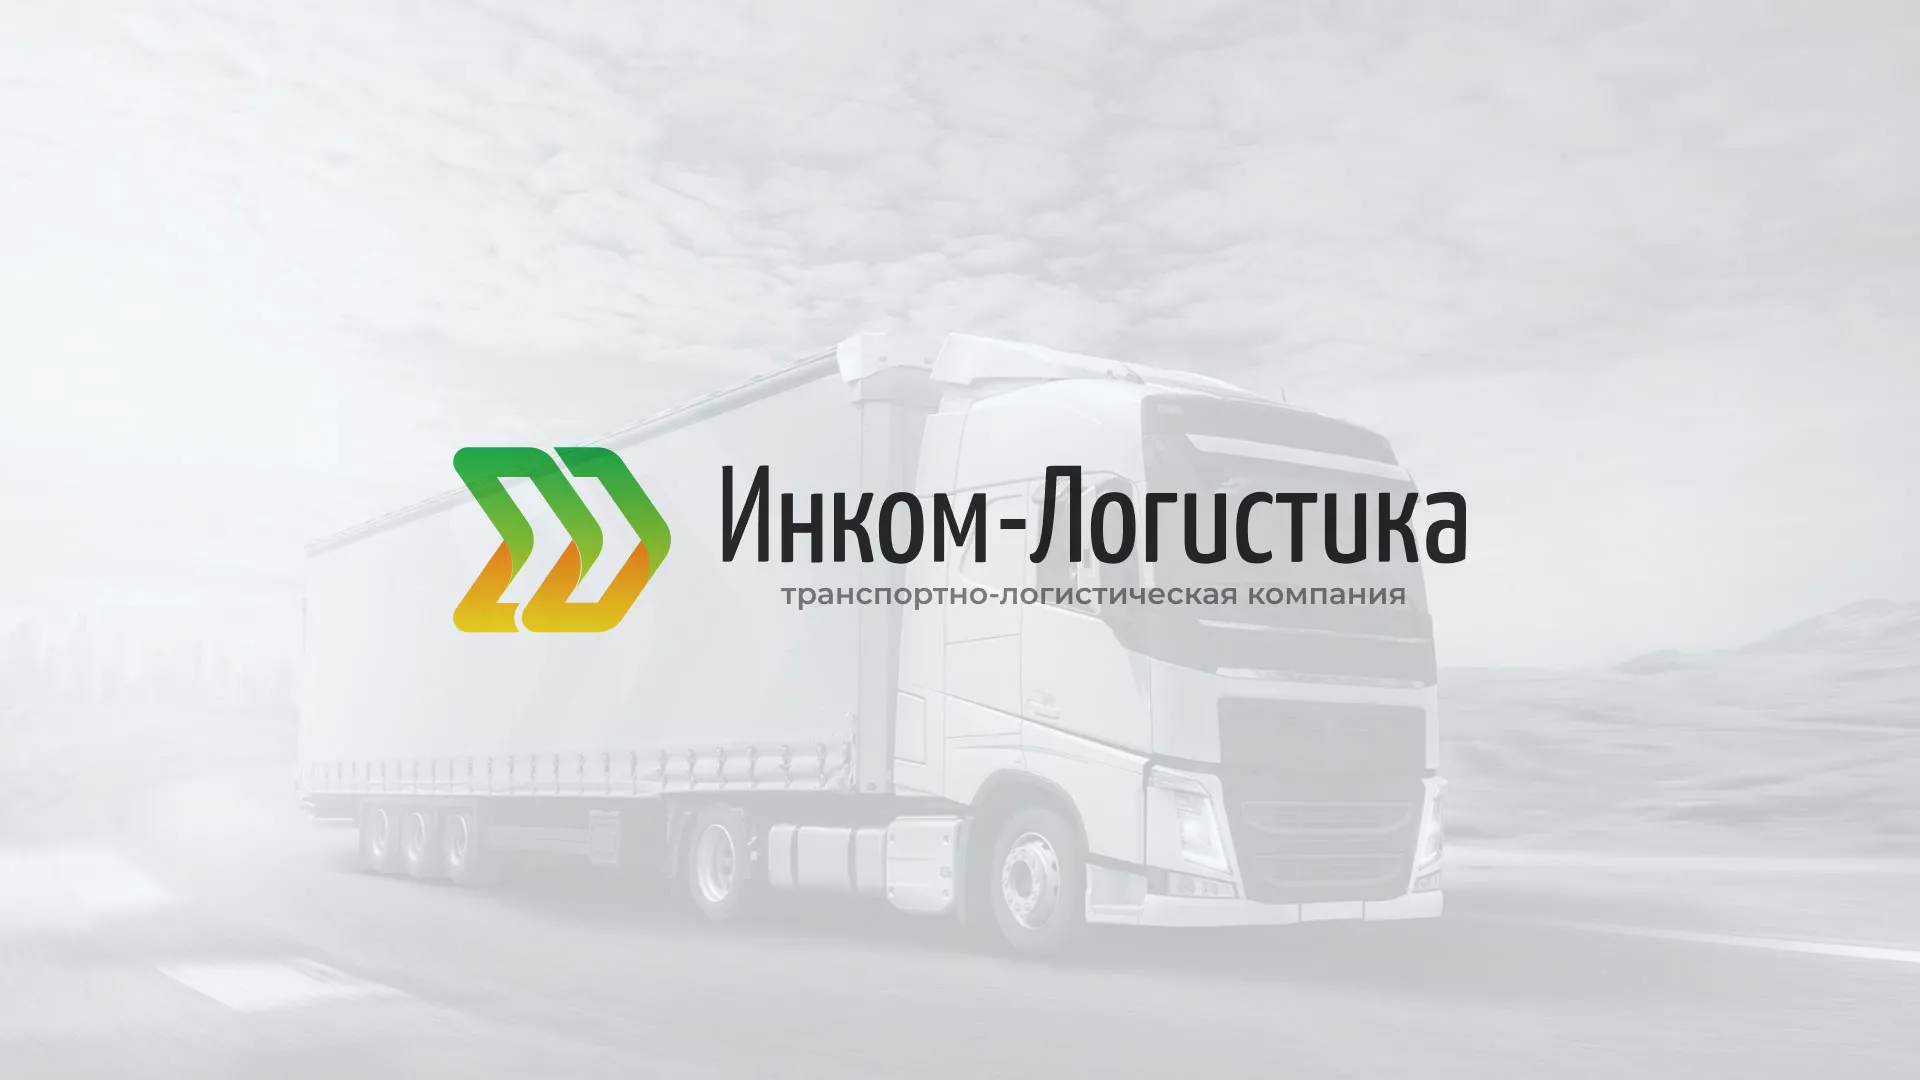 Разработка логотипа и сайта компании «Инком-Логистика» в Соколе